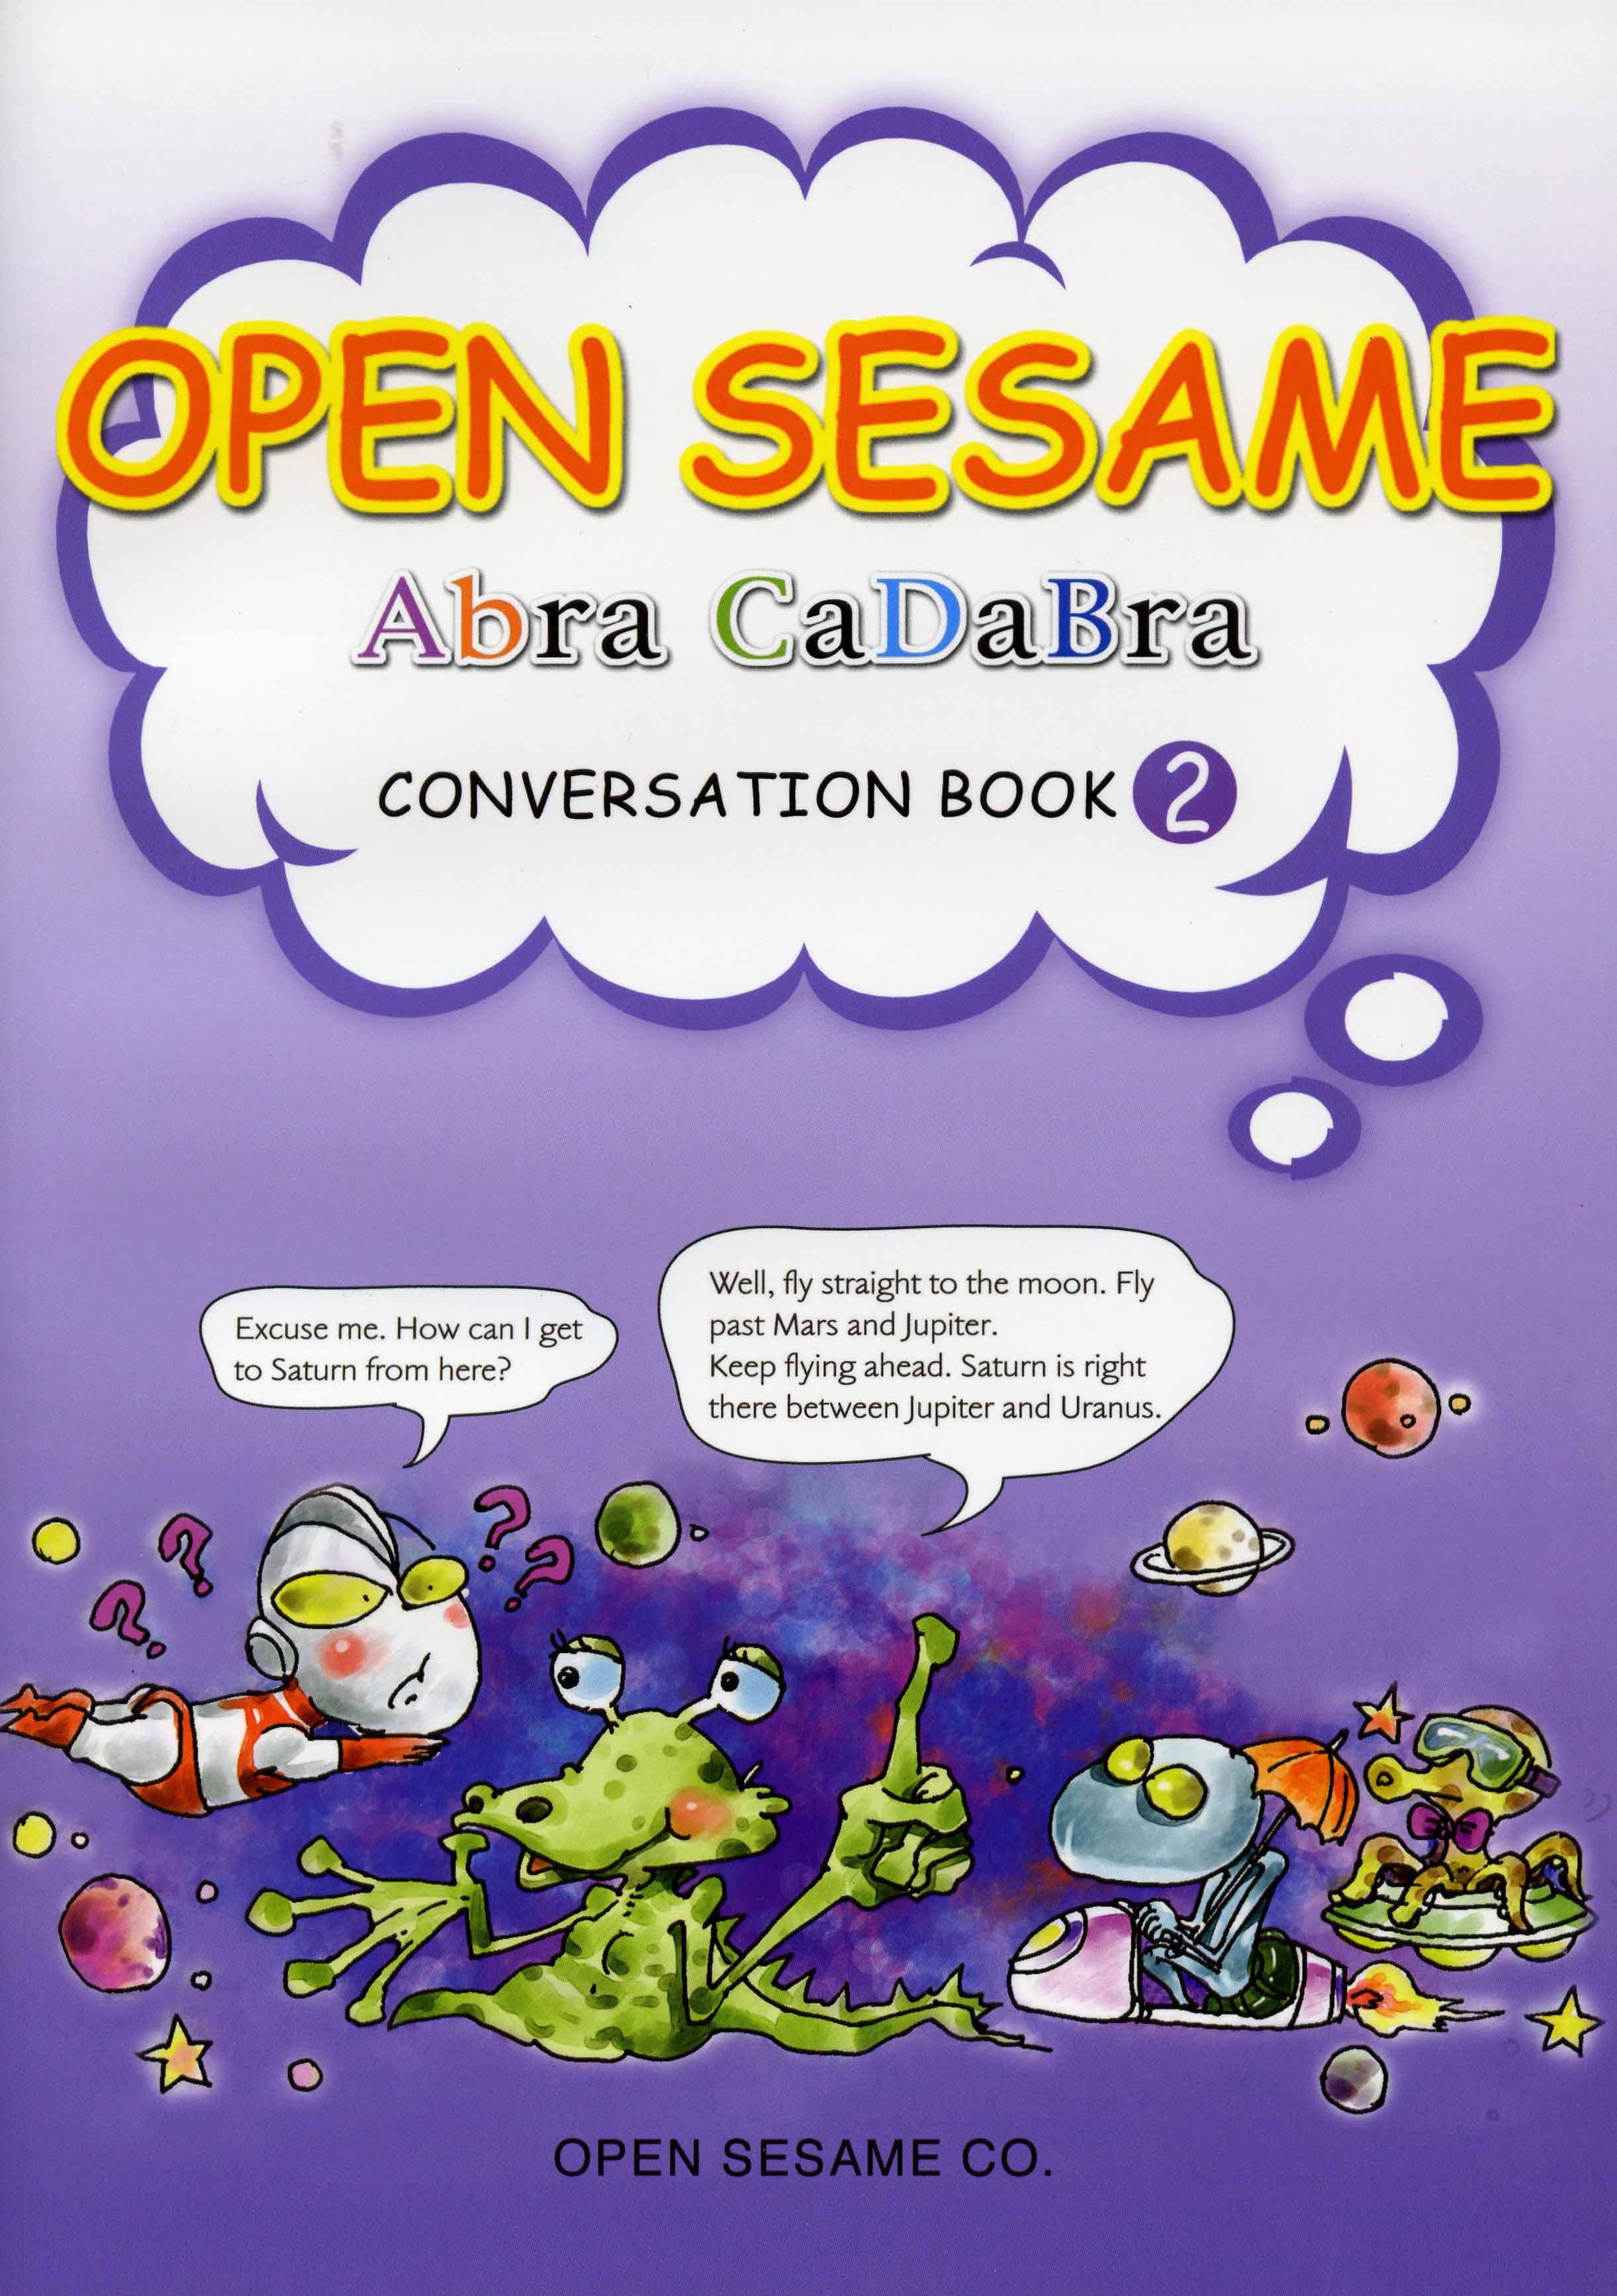  Abracadabra Conversation Book 2 